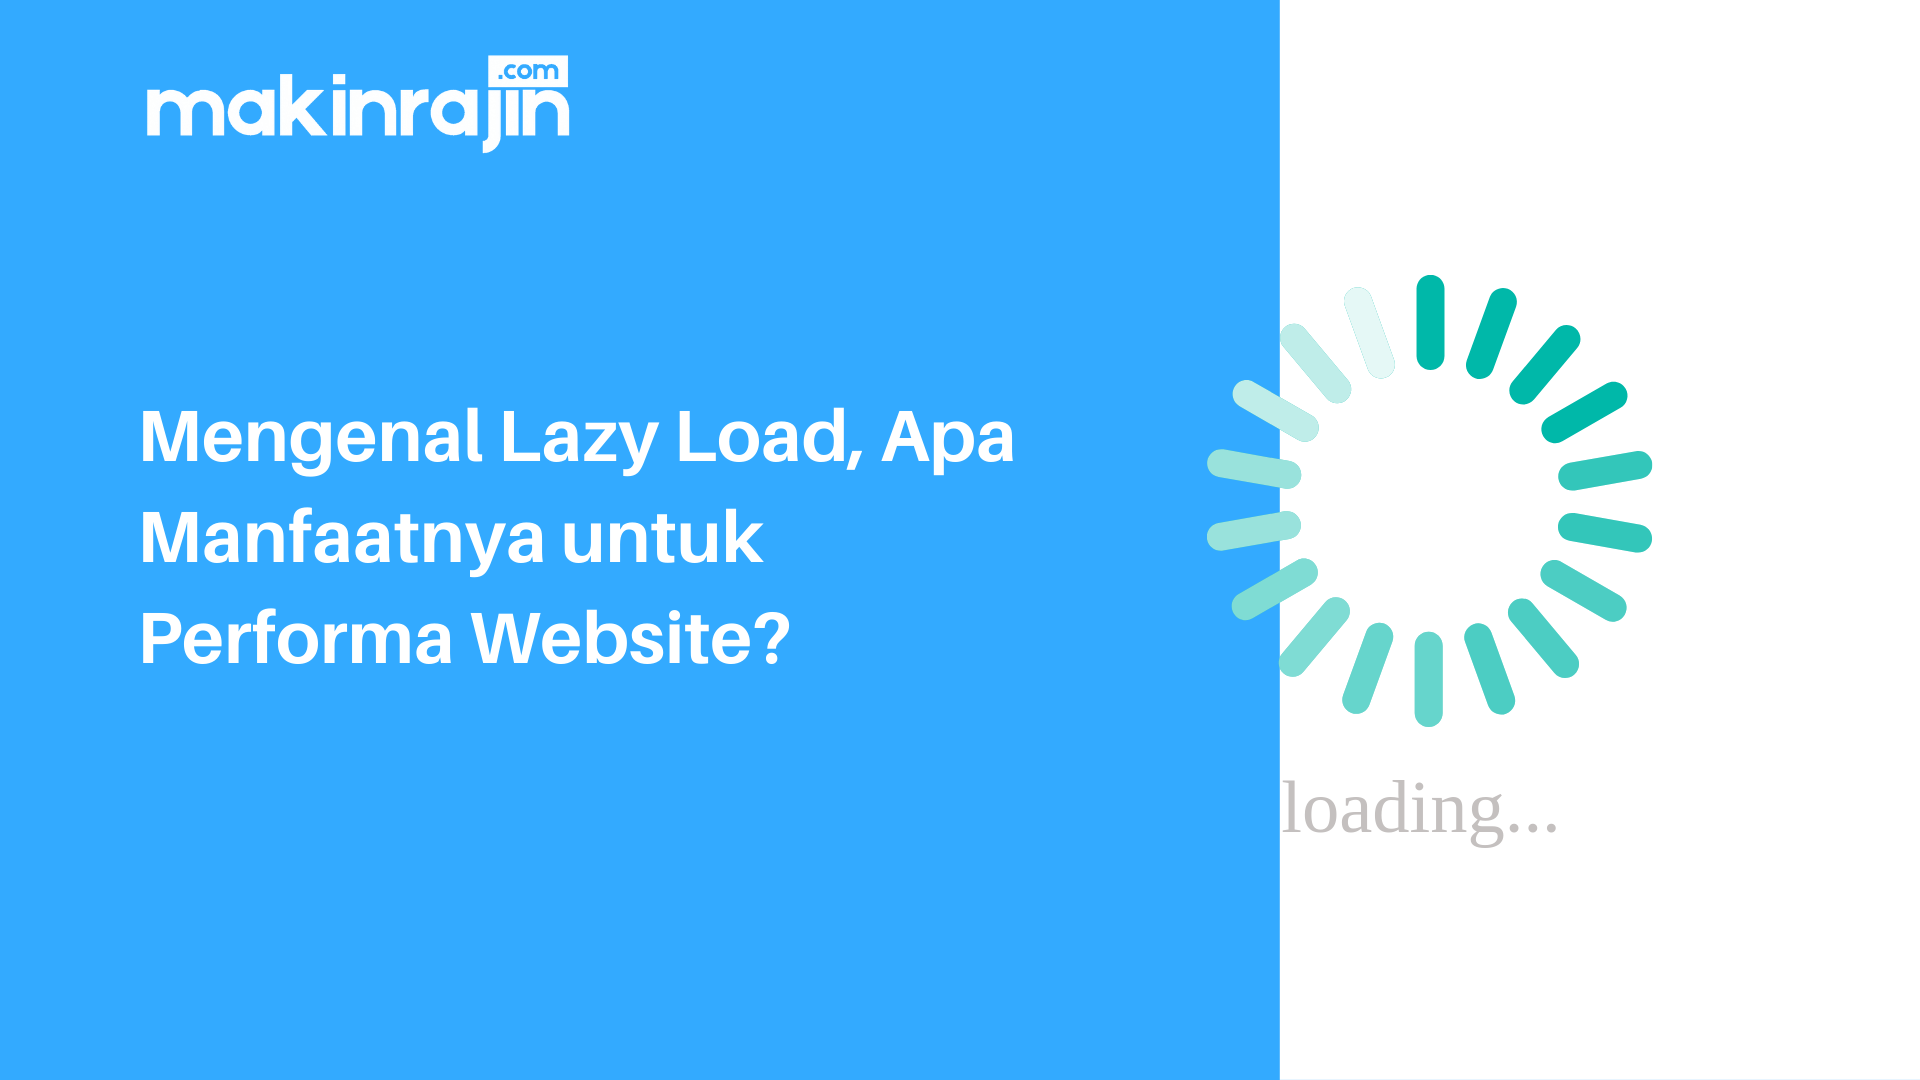 Mengenal Lazy Load, Apa Manfaatnya untuk Performa Website